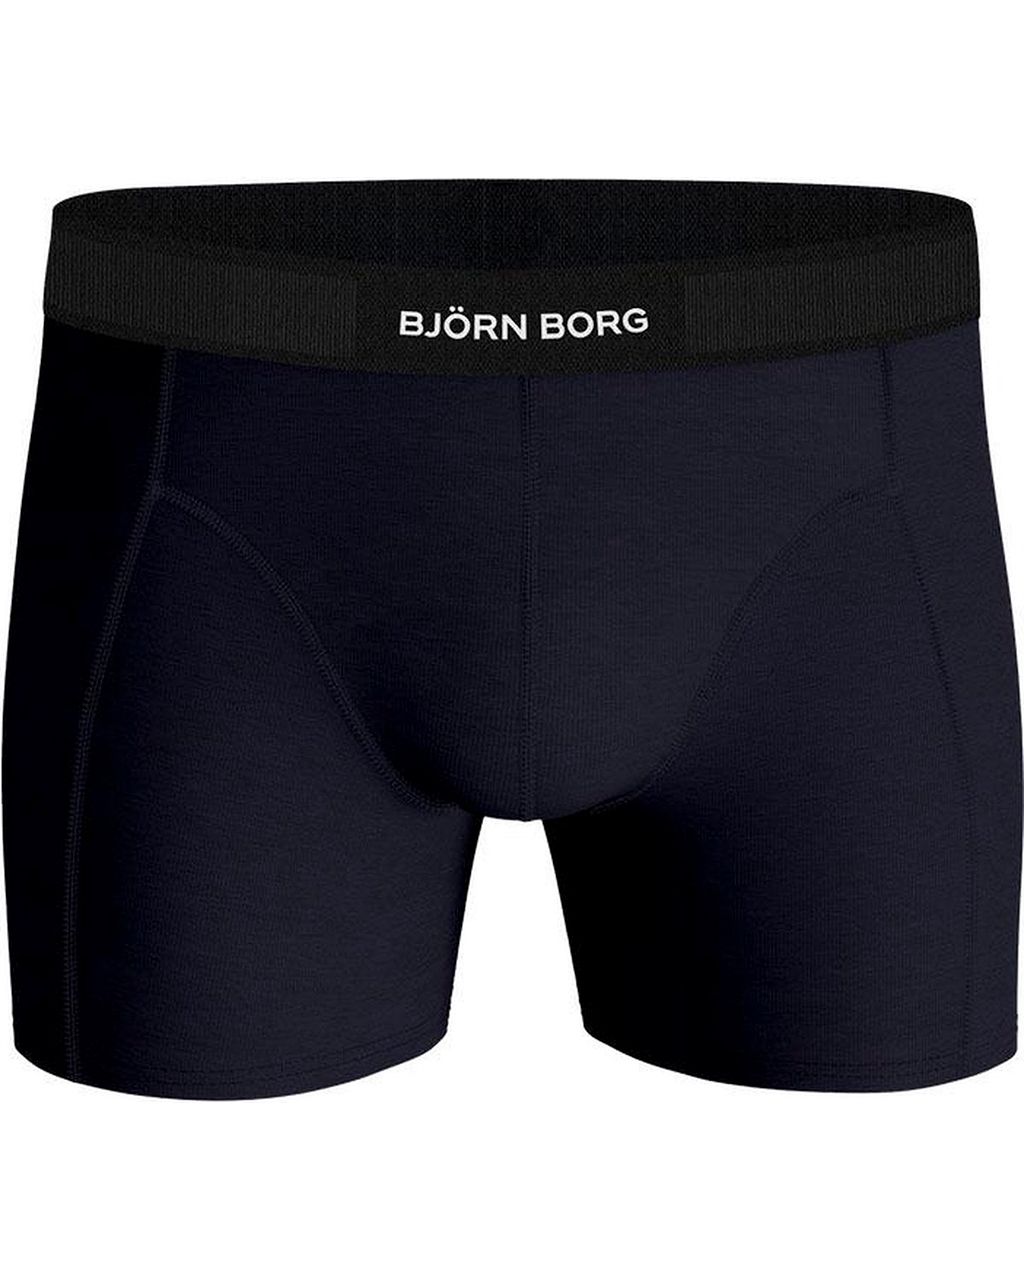 Björn Borg Boxershort Donker blauw 080048-001-L